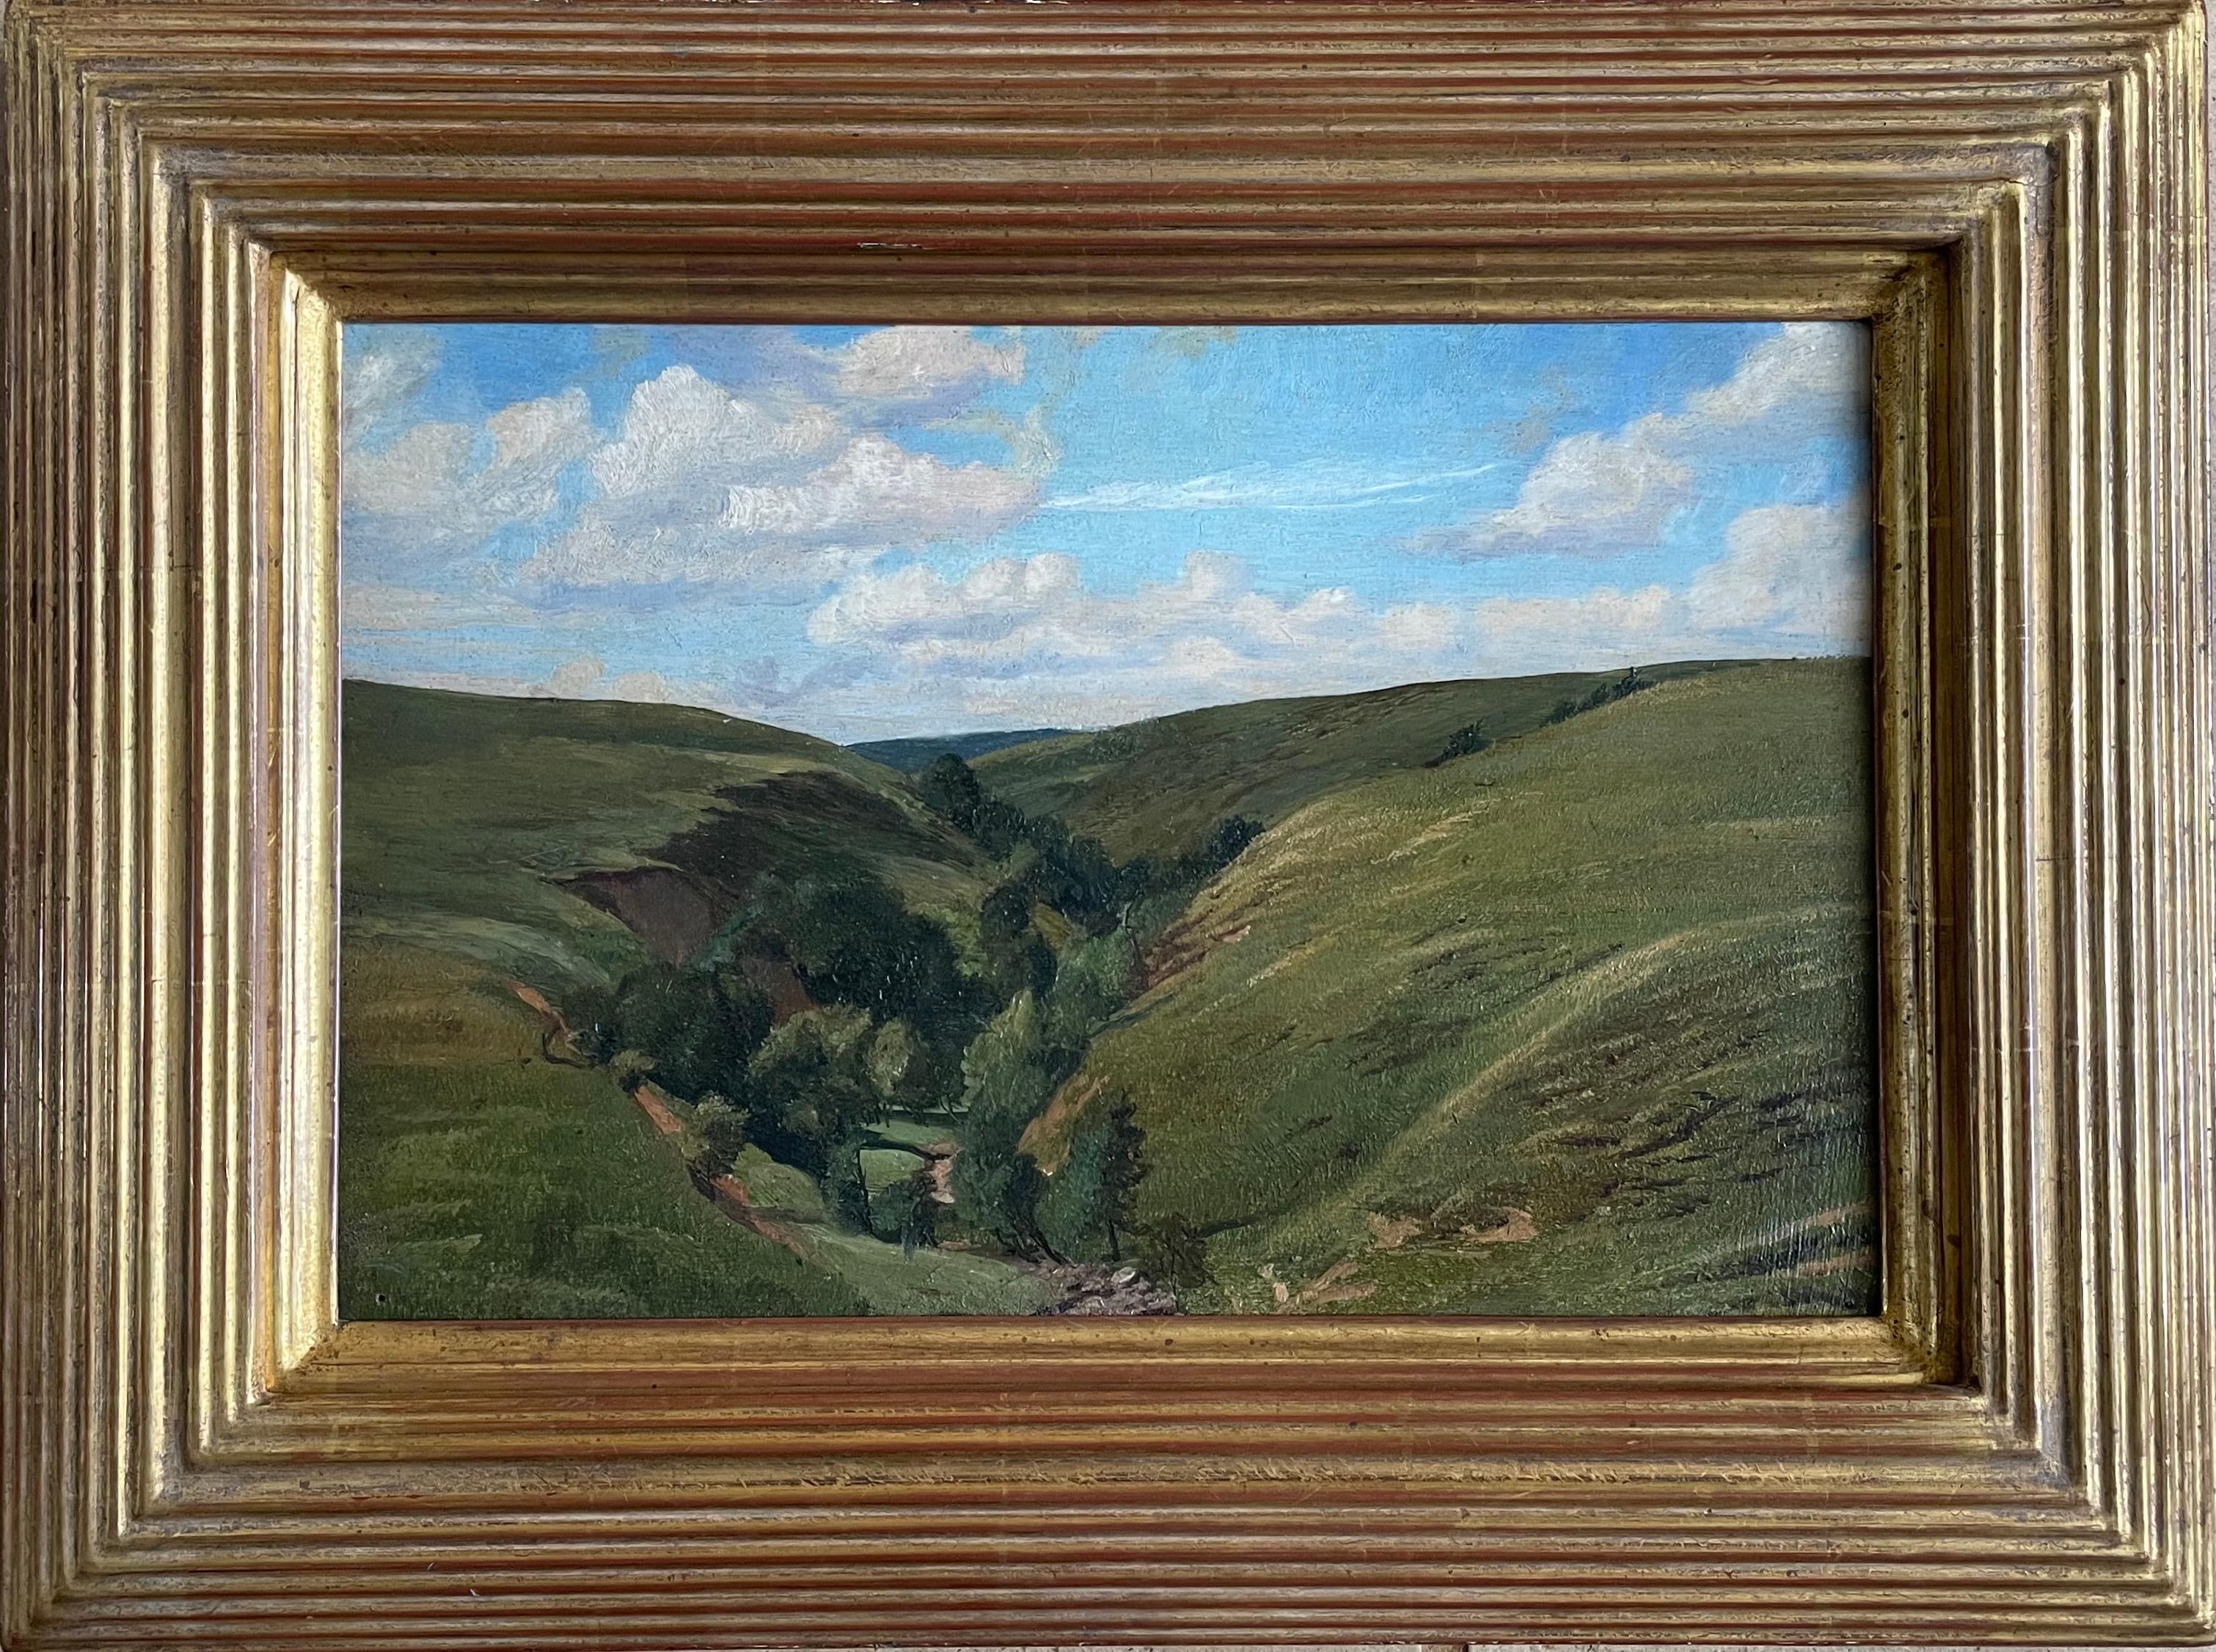 Walter James, 3rd Baron Northbourne Landscape Painting – Landschafts Ölgemälde der etruskischen Schule des britischen Künstlers Walter James aus dem 19. Jahrhundert